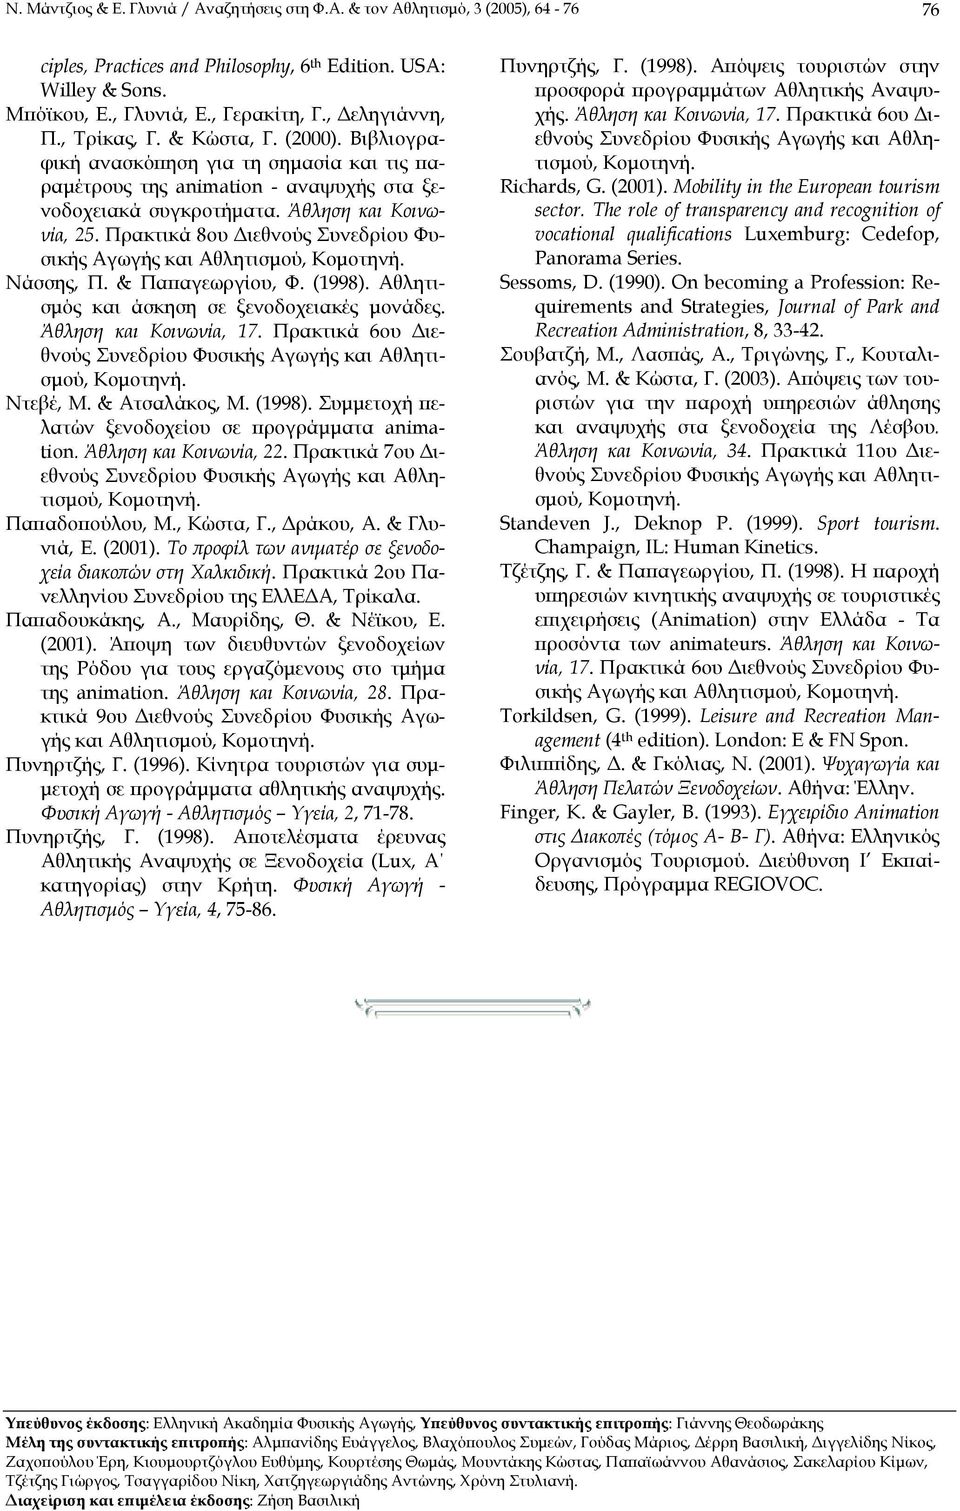 Πρακτικά 8ου ιεθνούς Συνεδρίου Φυσικής Αγωγής και Αθλητισµού, Νάσσης, Π. & Παπαγεωργίου, Φ. (1998). Αθλητισµός και άσκηση σε ξενοδοχειακές µονάδες. Άθληση και Κοινωνία, 17.